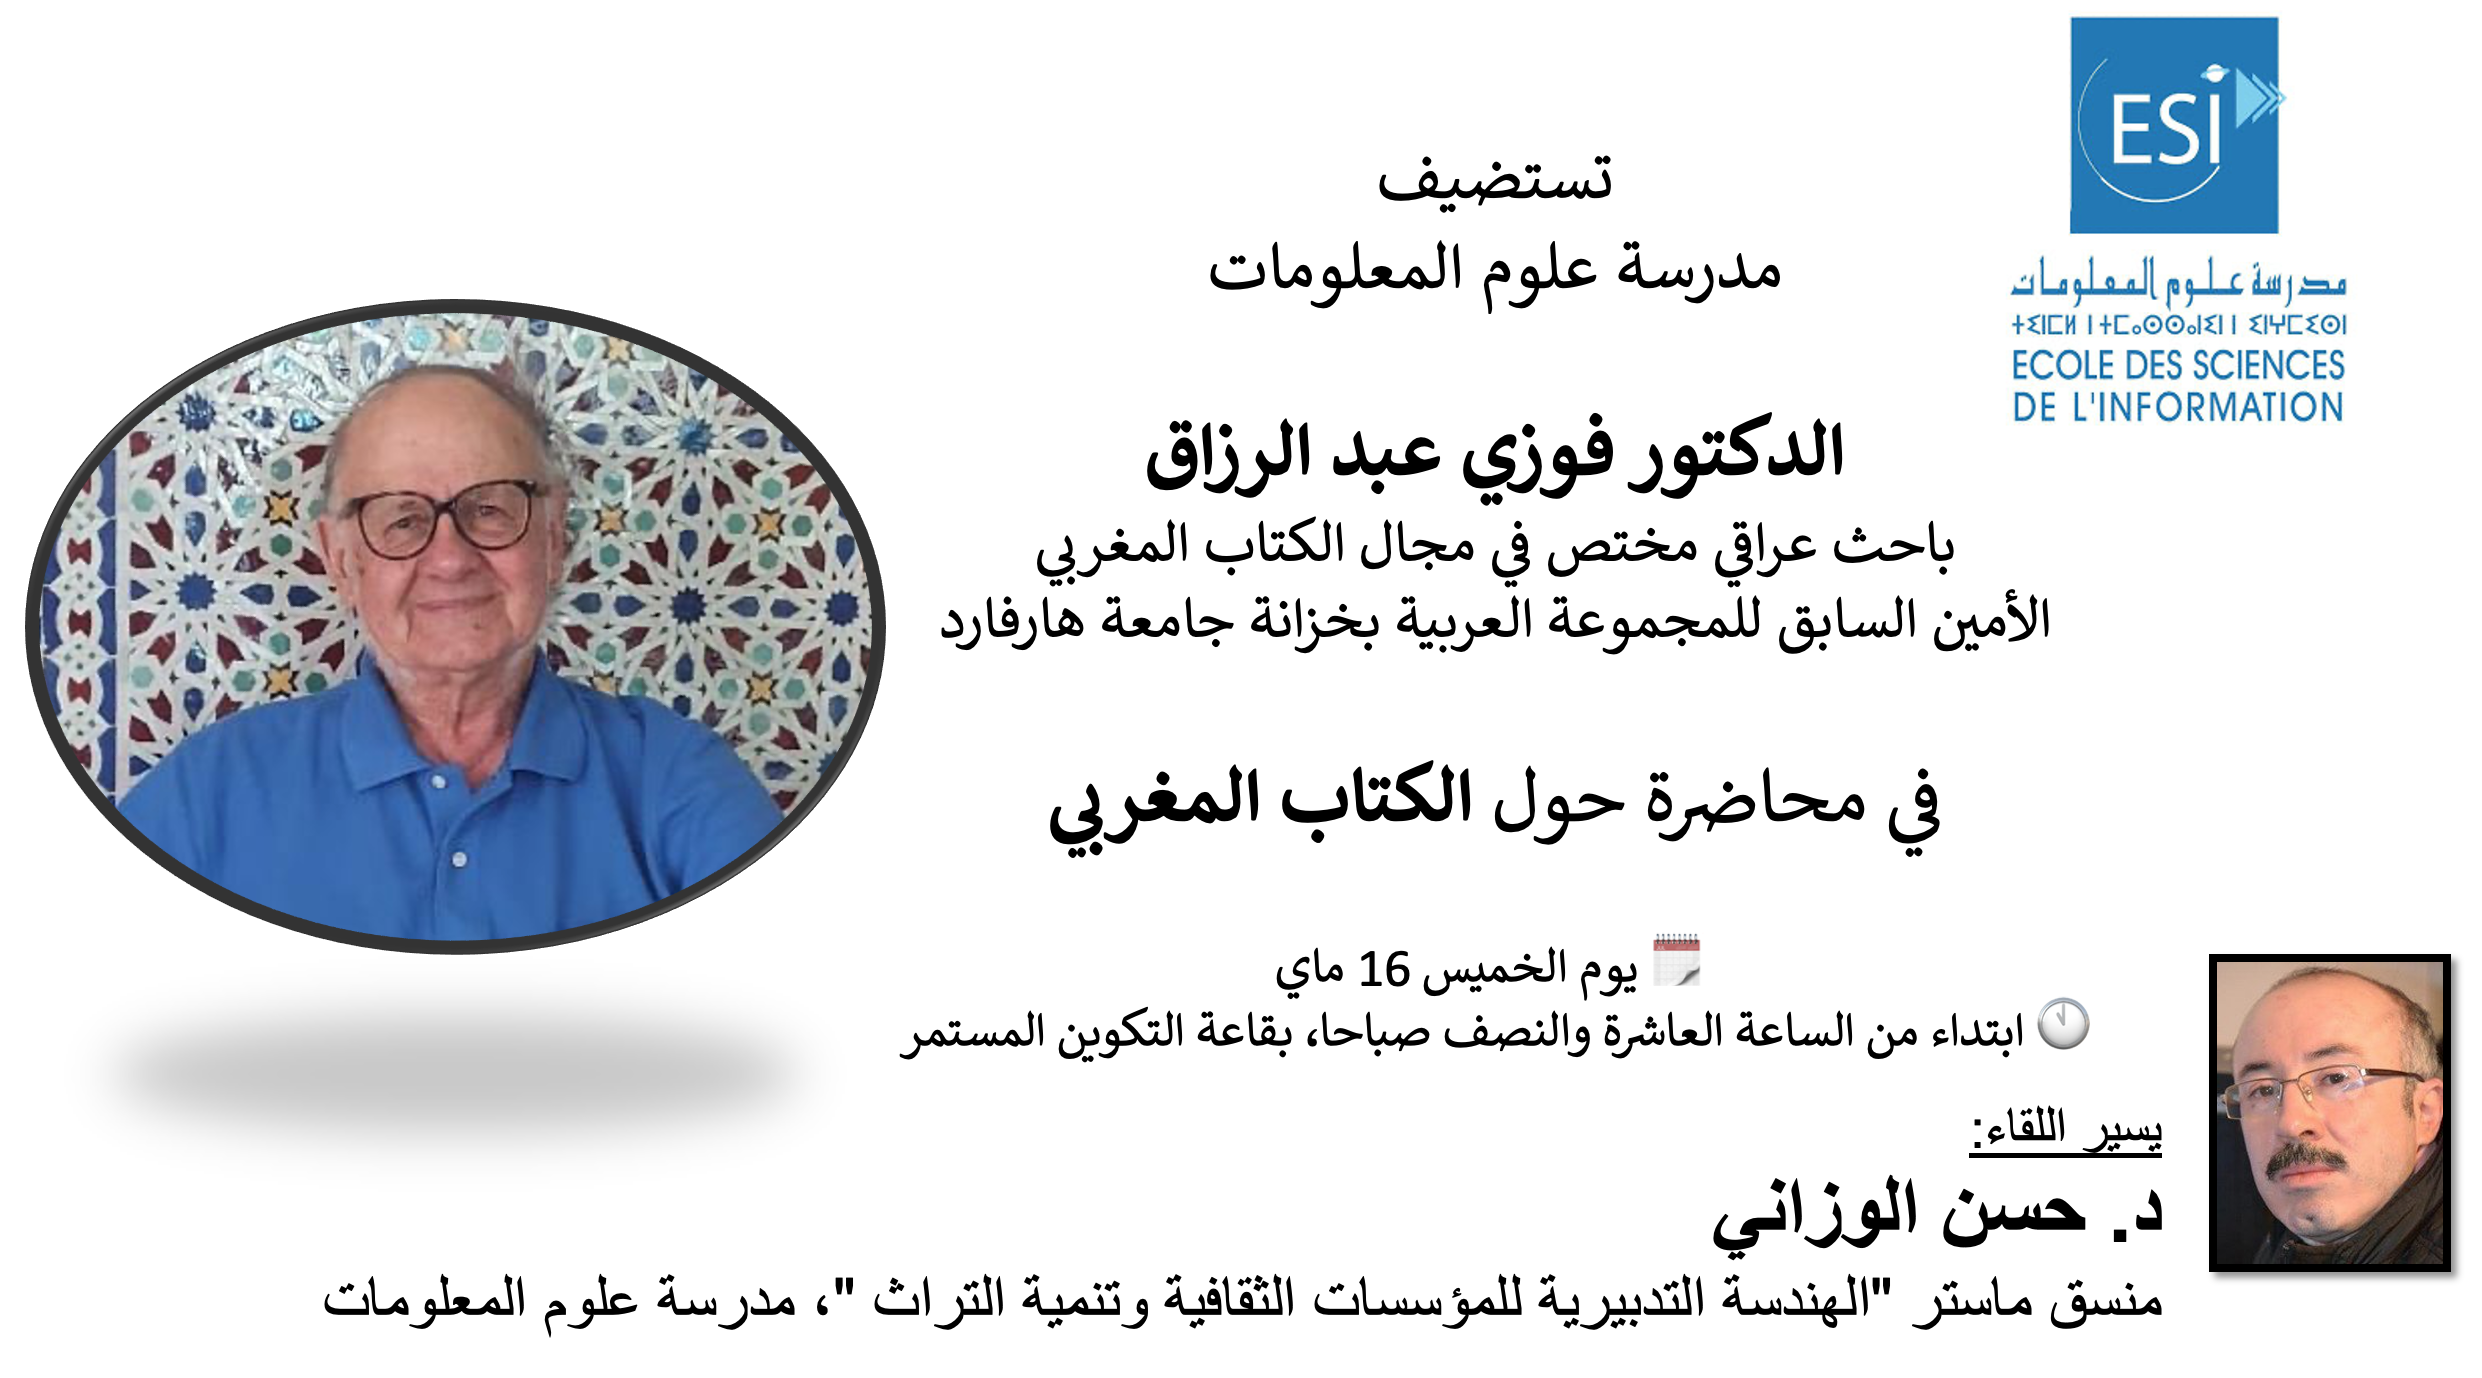 Conférence sur le “Livre marocain” par le chercheur irakien Dr Fawzi Abderrazak (الدكتور فوزي عبد الرزاق)